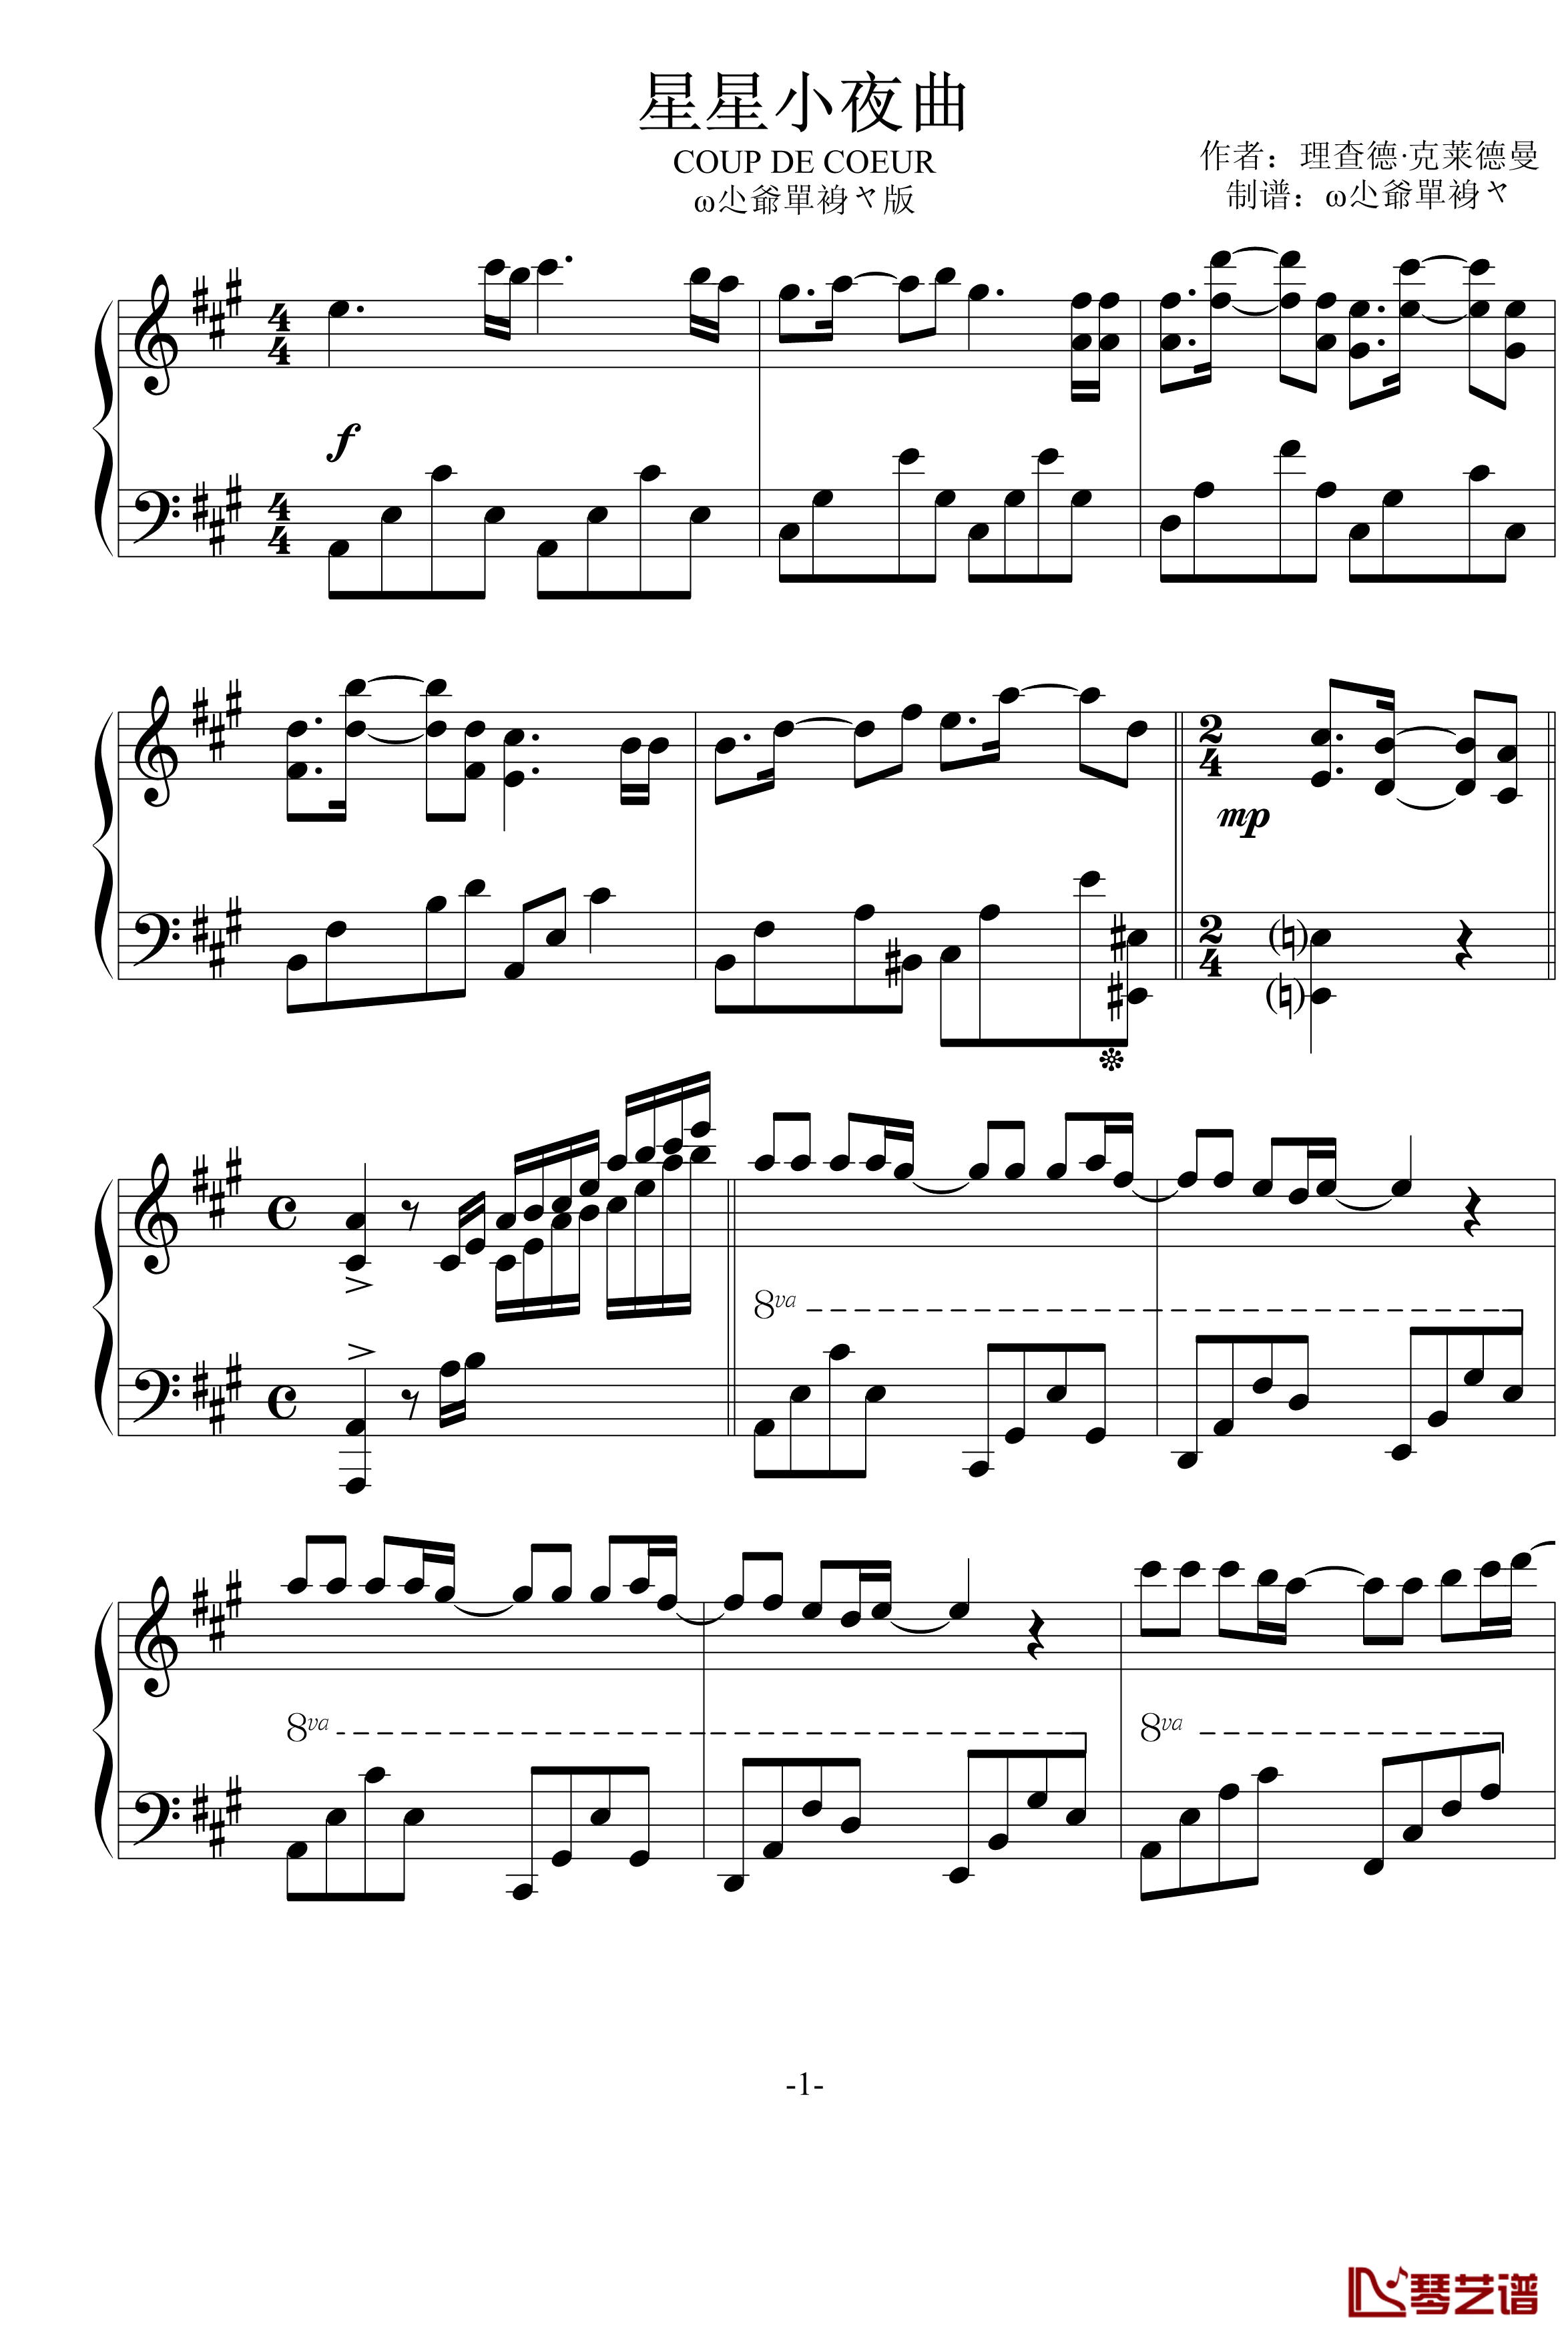 星星小夜曲钢琴谱-ω尐爺單裑ヤ版-克莱德曼1